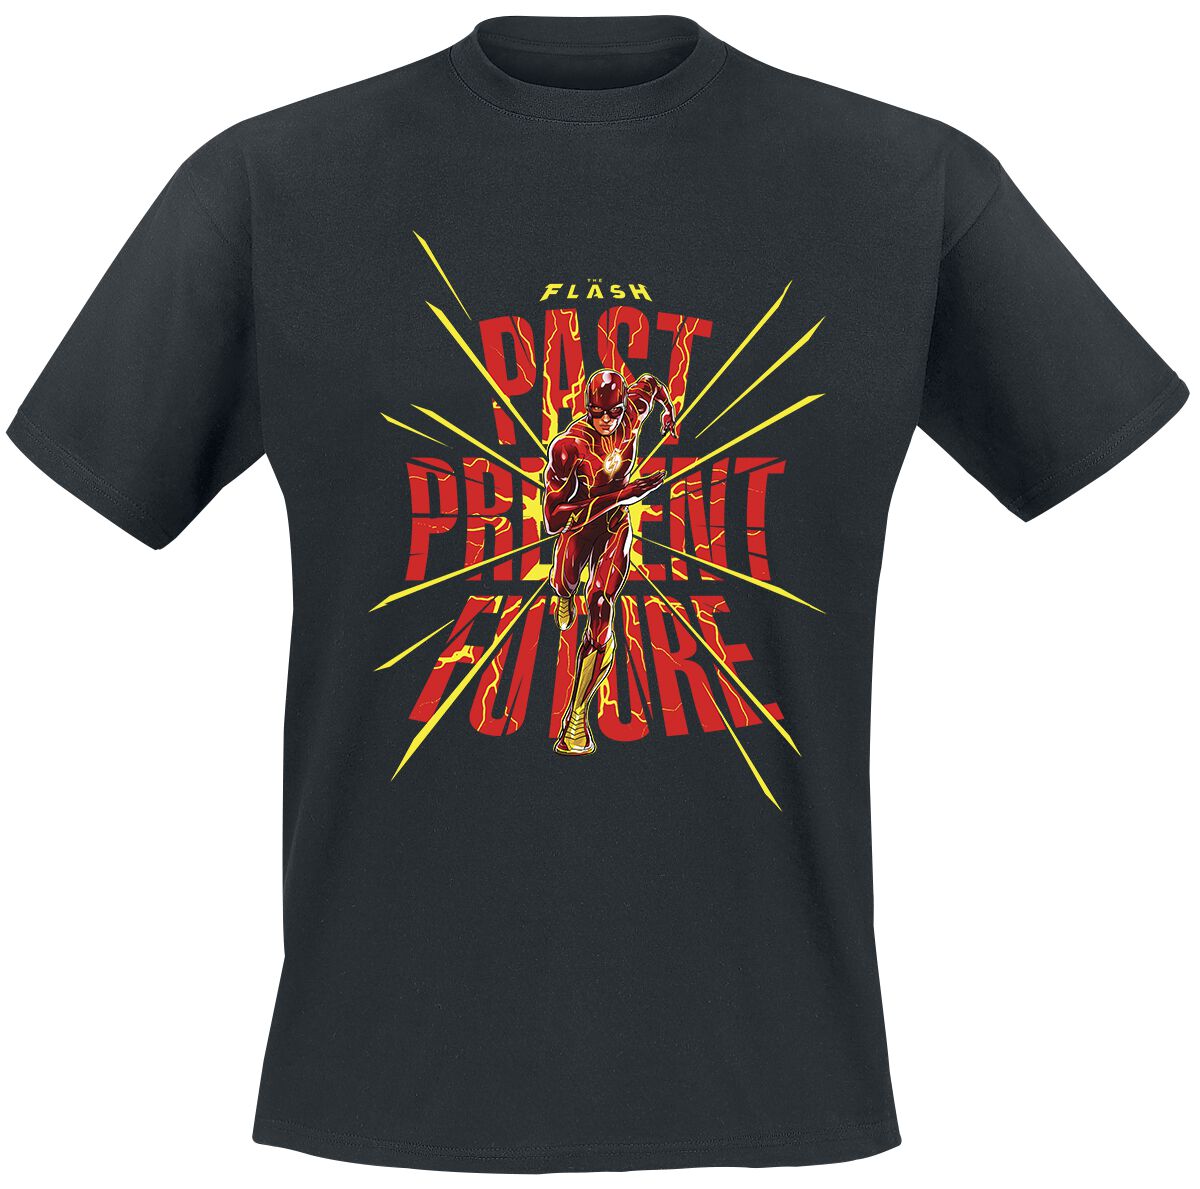 The Flash - DC Comics T-Shirt - Past Present Future - S bis XXL - für Männer - Größe L - schwarz  - Lizenzierter Fanartikel